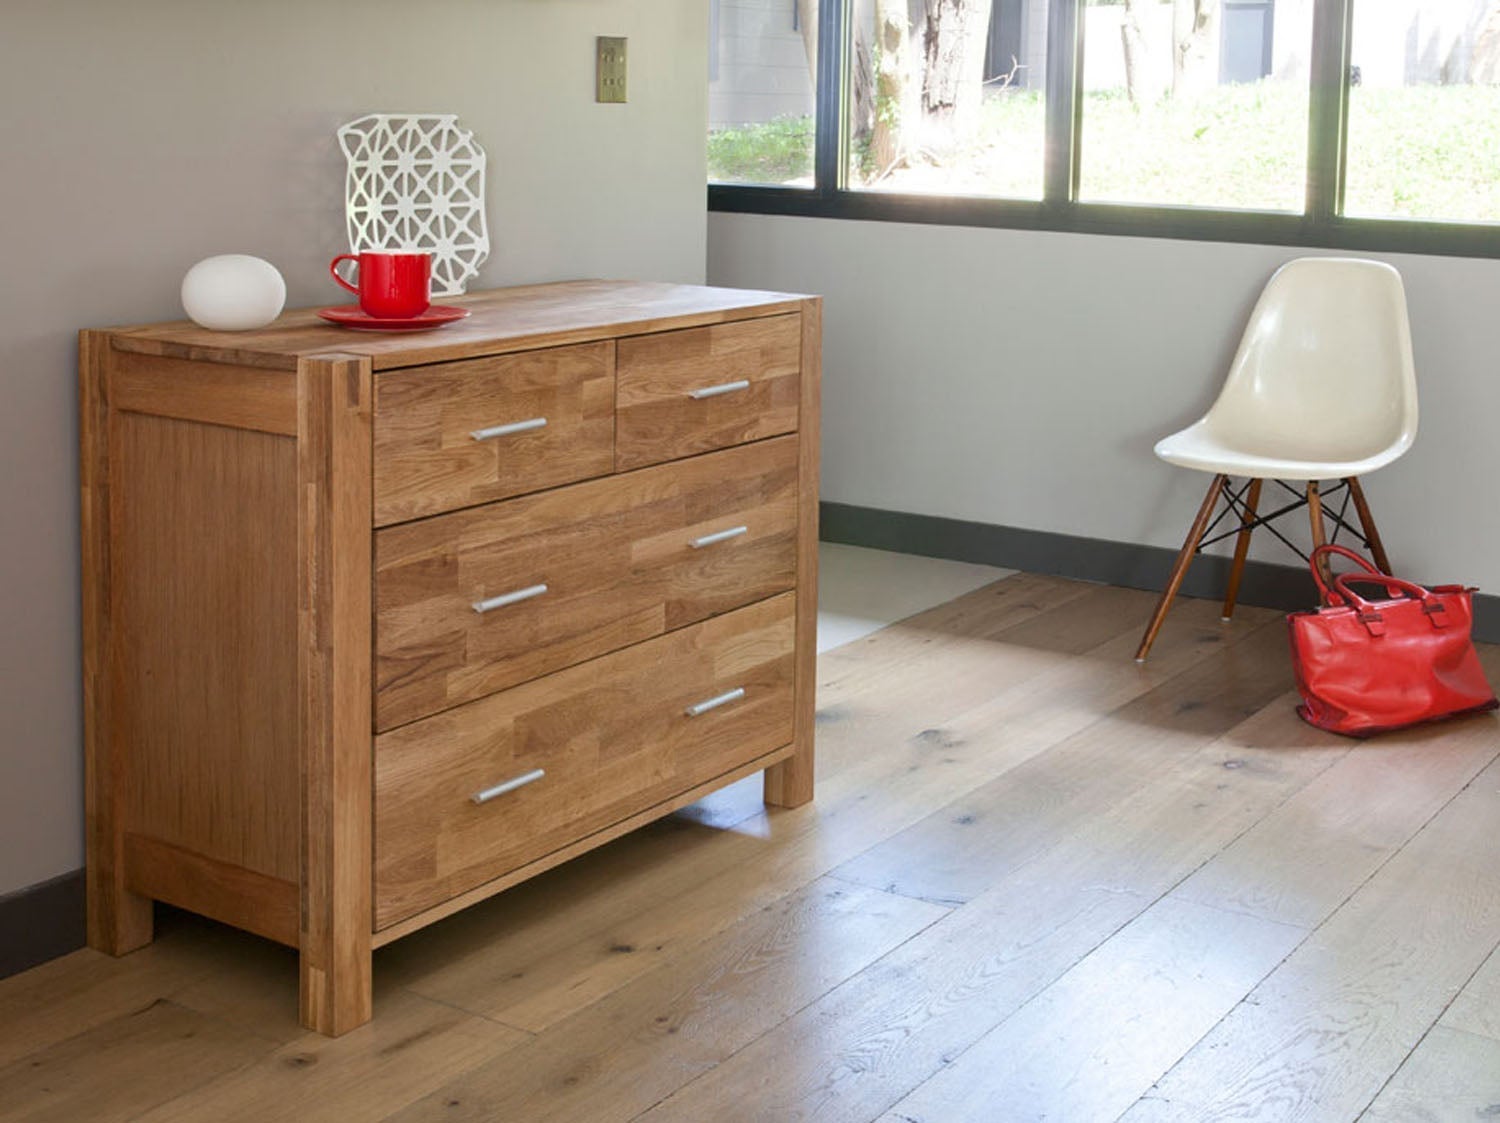 Comment choisir sa cire pour meuble ou objet en bois ?